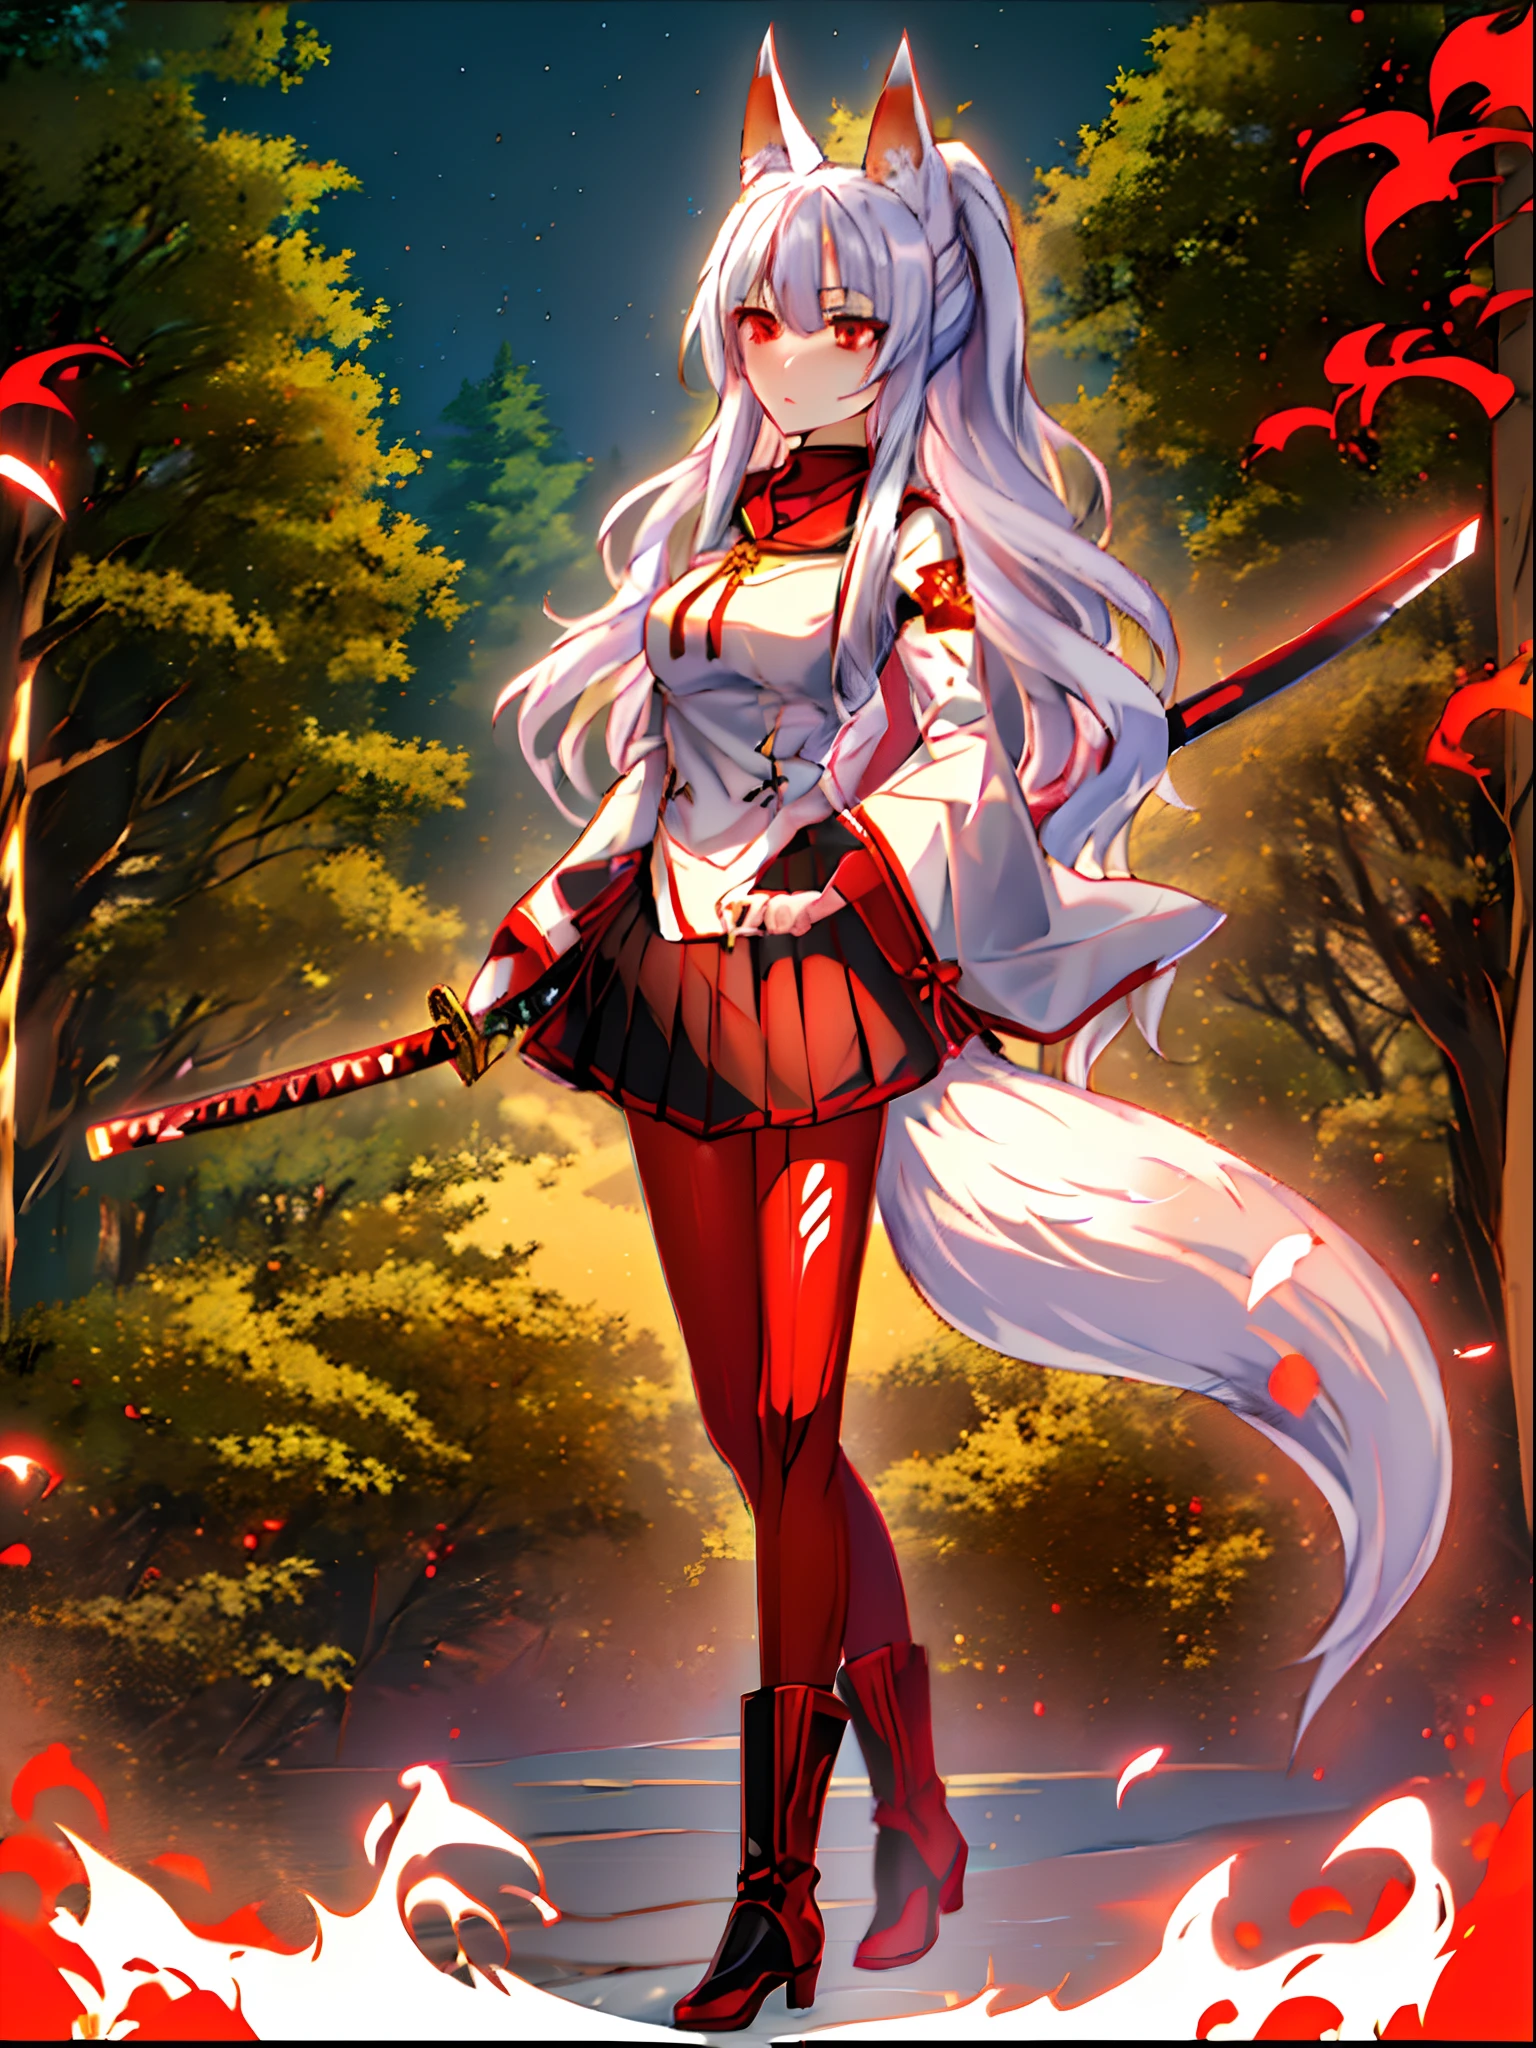 (Anime Kitsune Mädchen mit langen weißen Haaren im Pferdeschwanz), (Fuchsmädchen hält ein Katana und trägt eine weiße Uniform und einen schwarzen Rock), (rote Augen), weißhaarige Gottheit, neutraler Ausdruck, gute Qualität, ((extreme Detailliertheit)), ((Walddorf im Hintergrund))